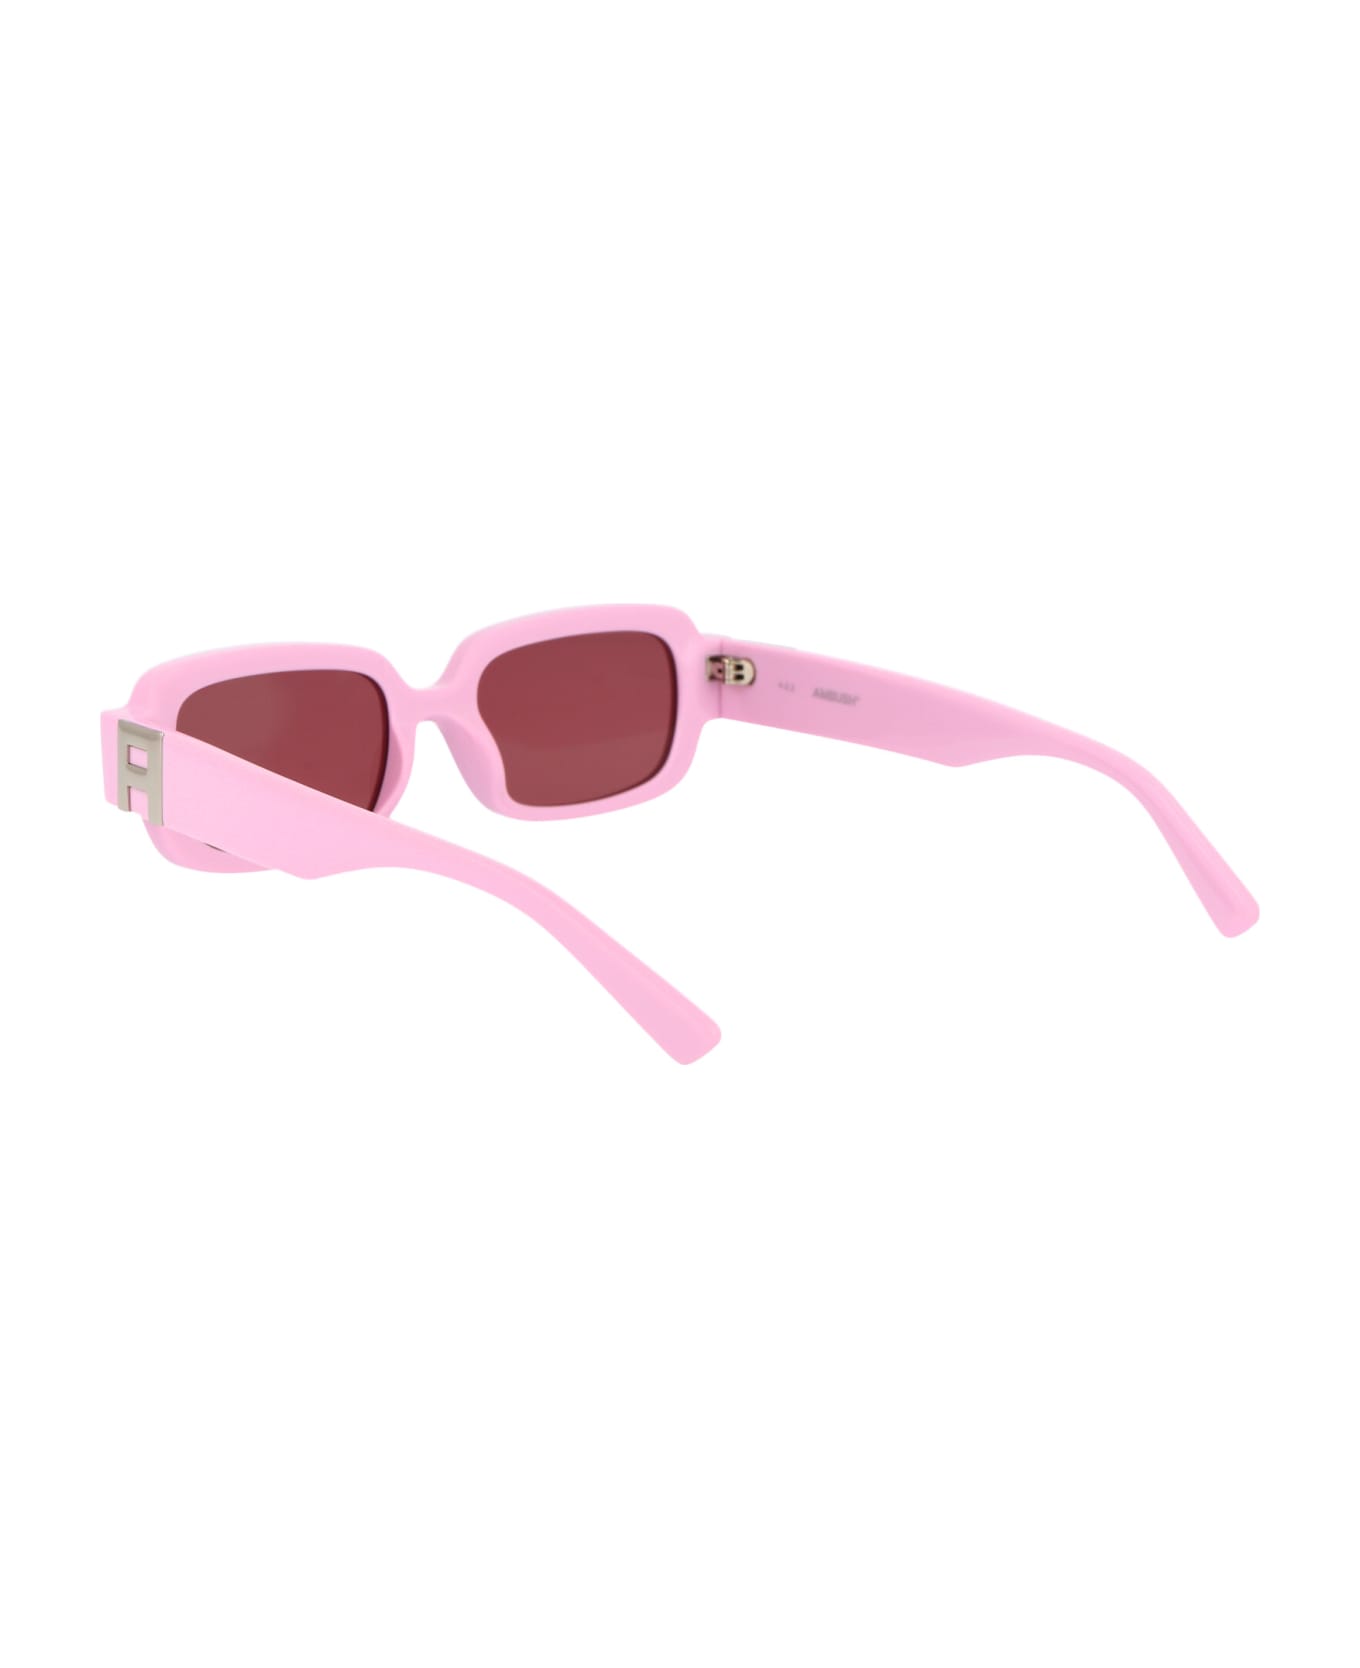 AMBUSH Thia Sunglasses - 3025 PINK